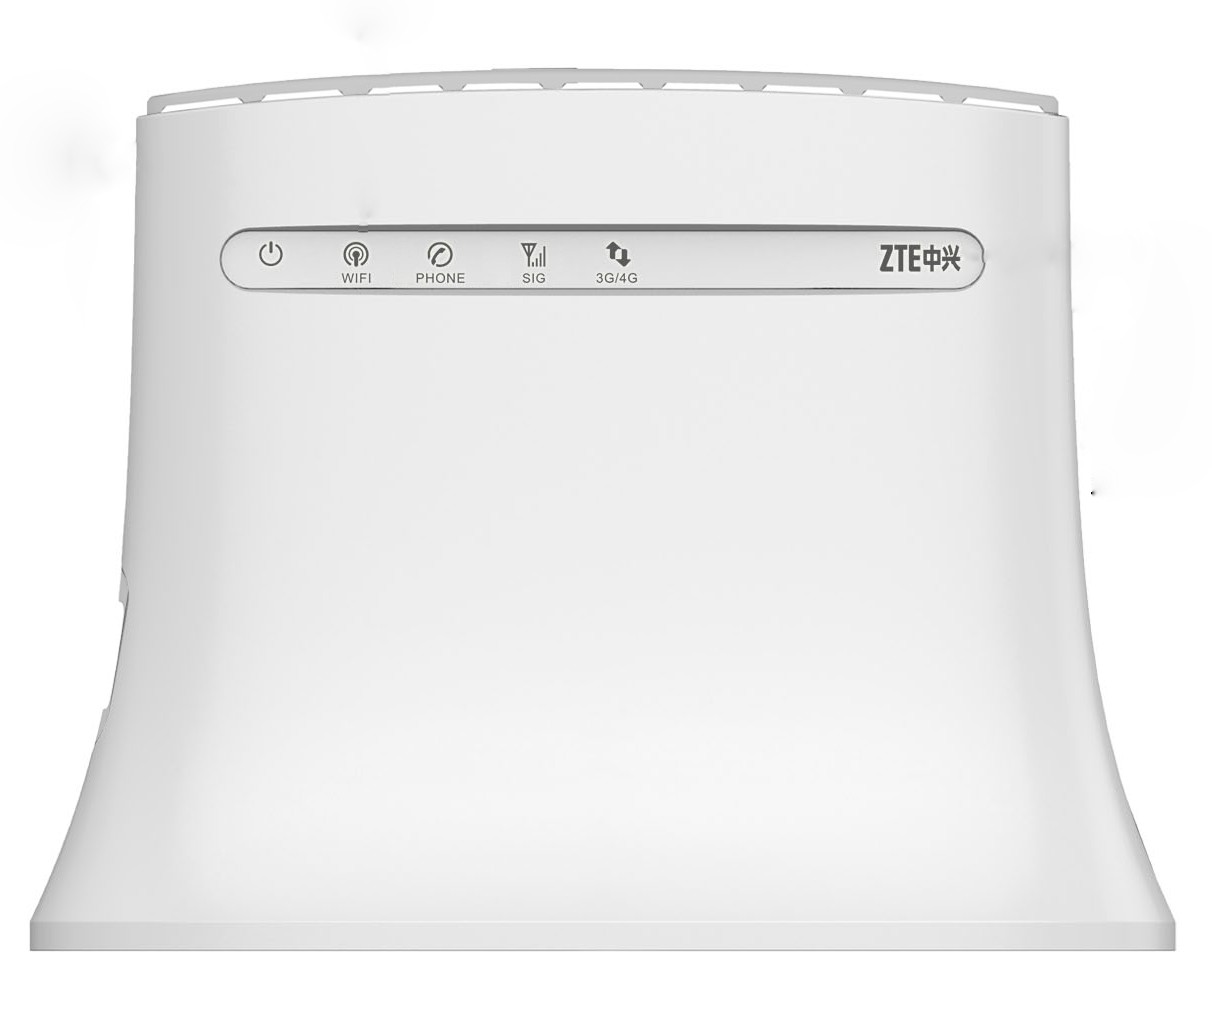 ZTE MF283 LTE Wireless Gateway Modem Router